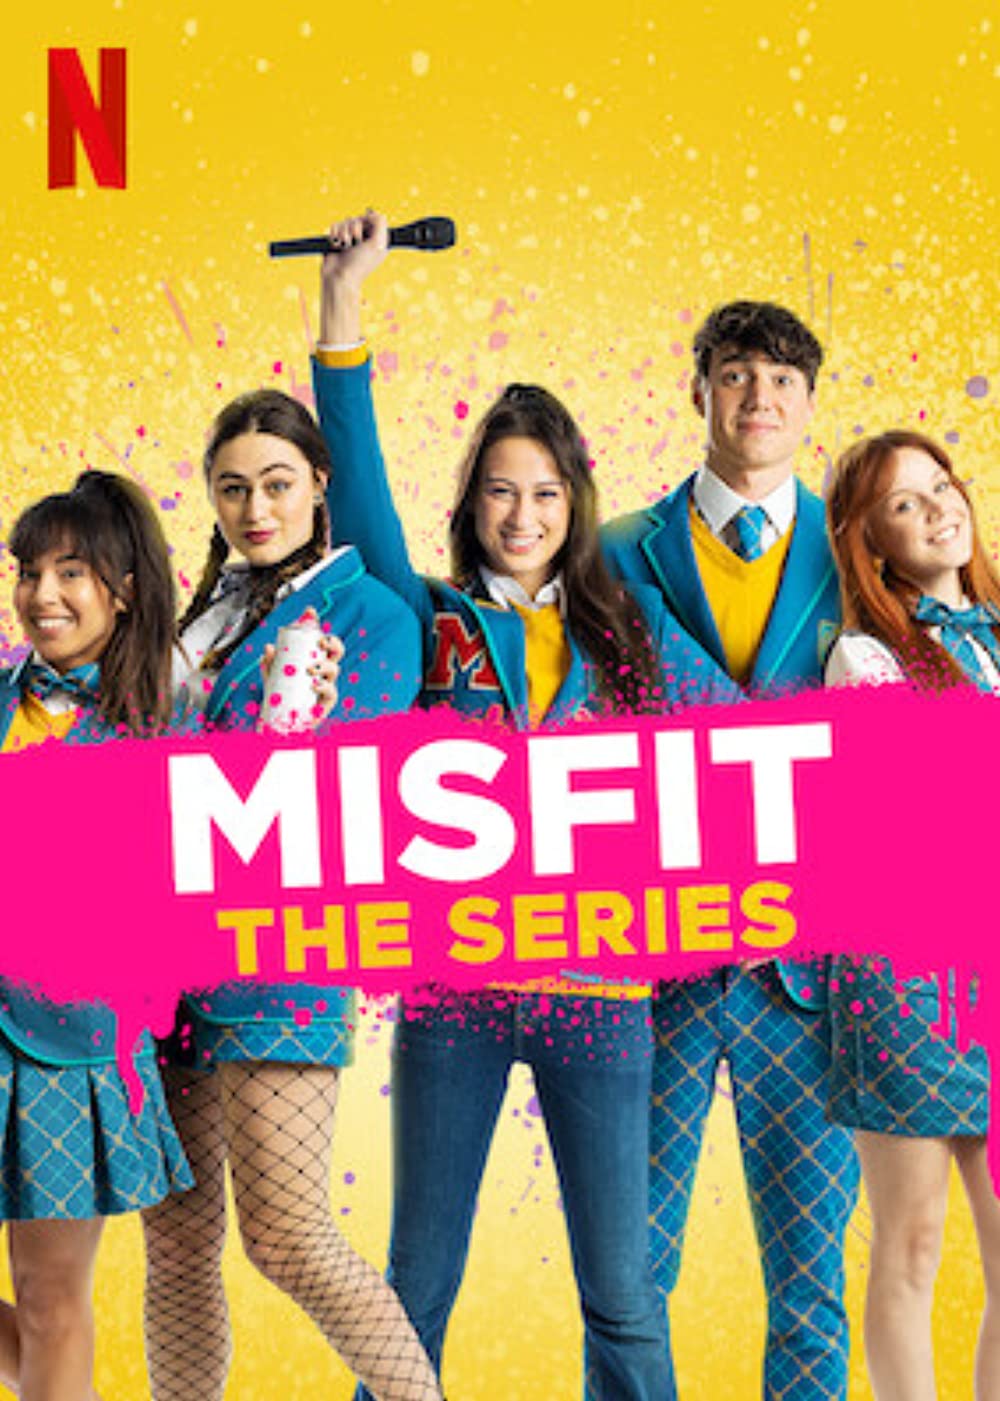 ดูหนังออนไลน์ฟรี MisFit The Series (2021) Episode2 มิสฟิช เดอะ ซีรี่ย์ ตอนที่ 2